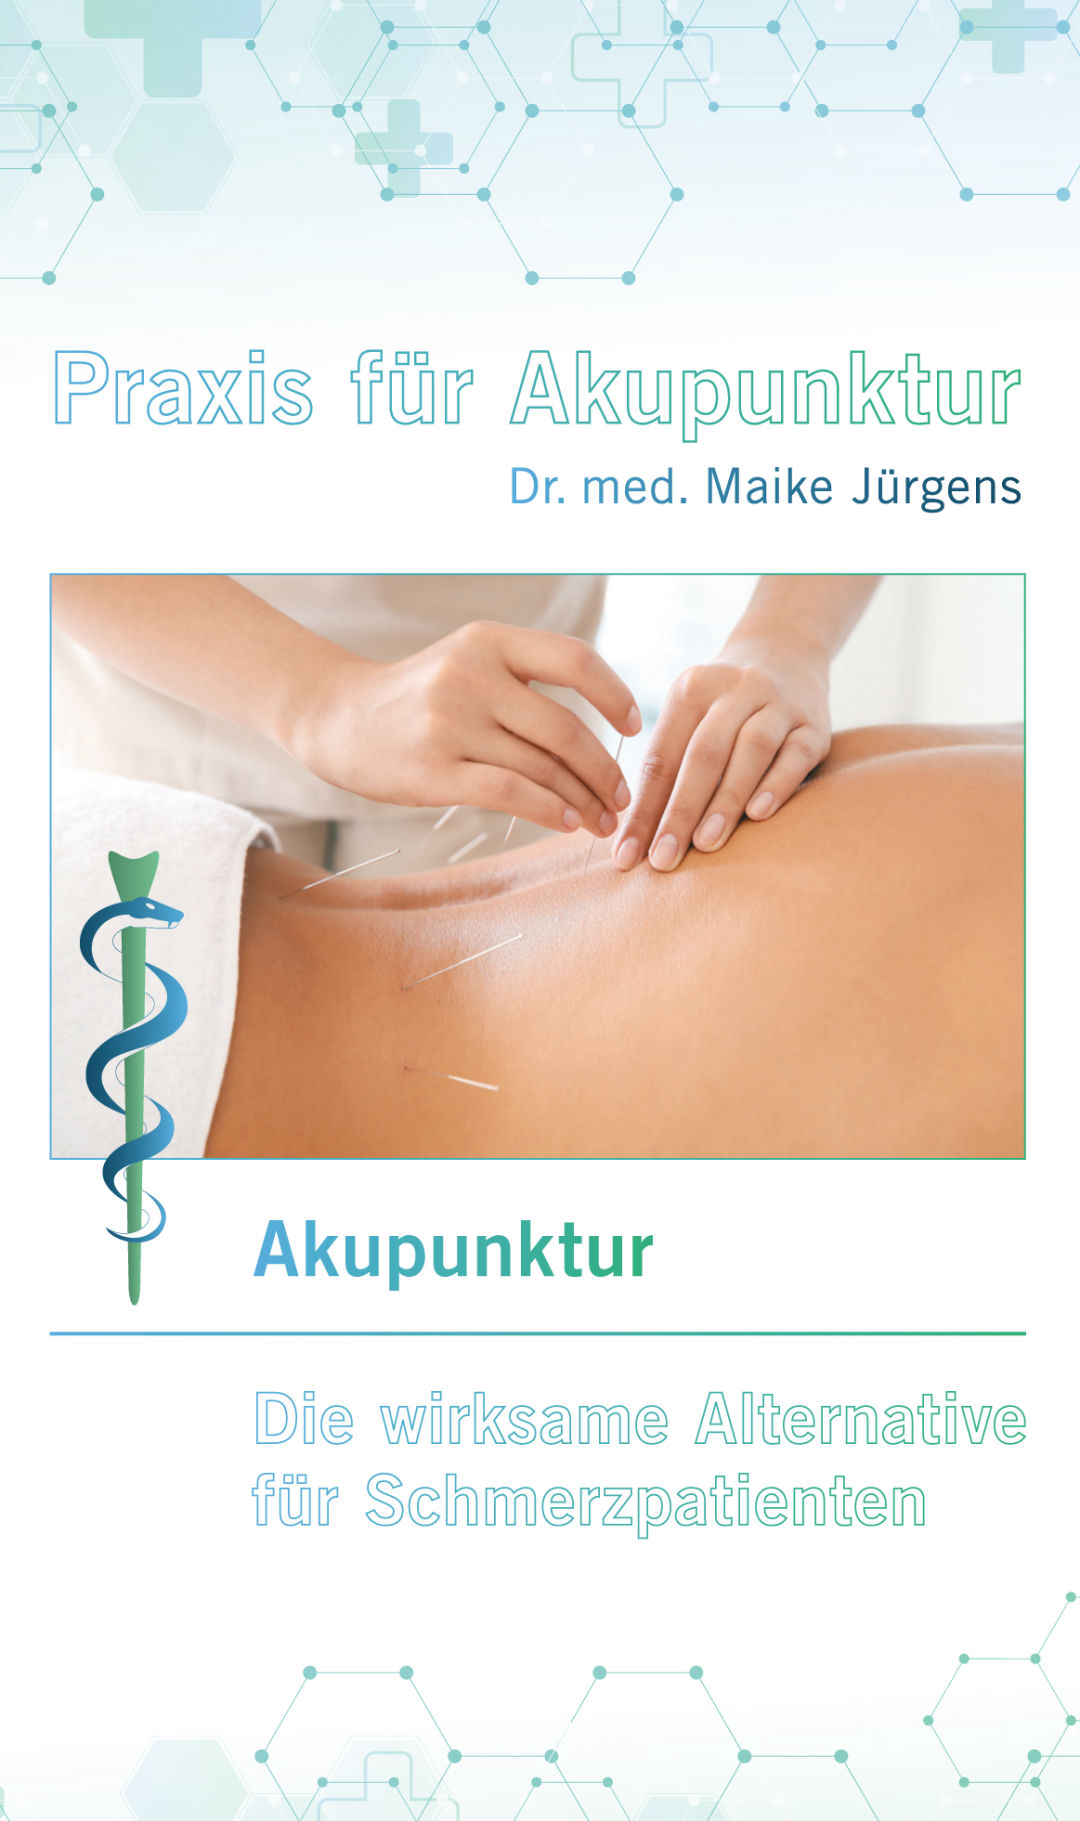 Praxis für Akupunktur in Bad Langensalza Dr. med. Maike Jürgens